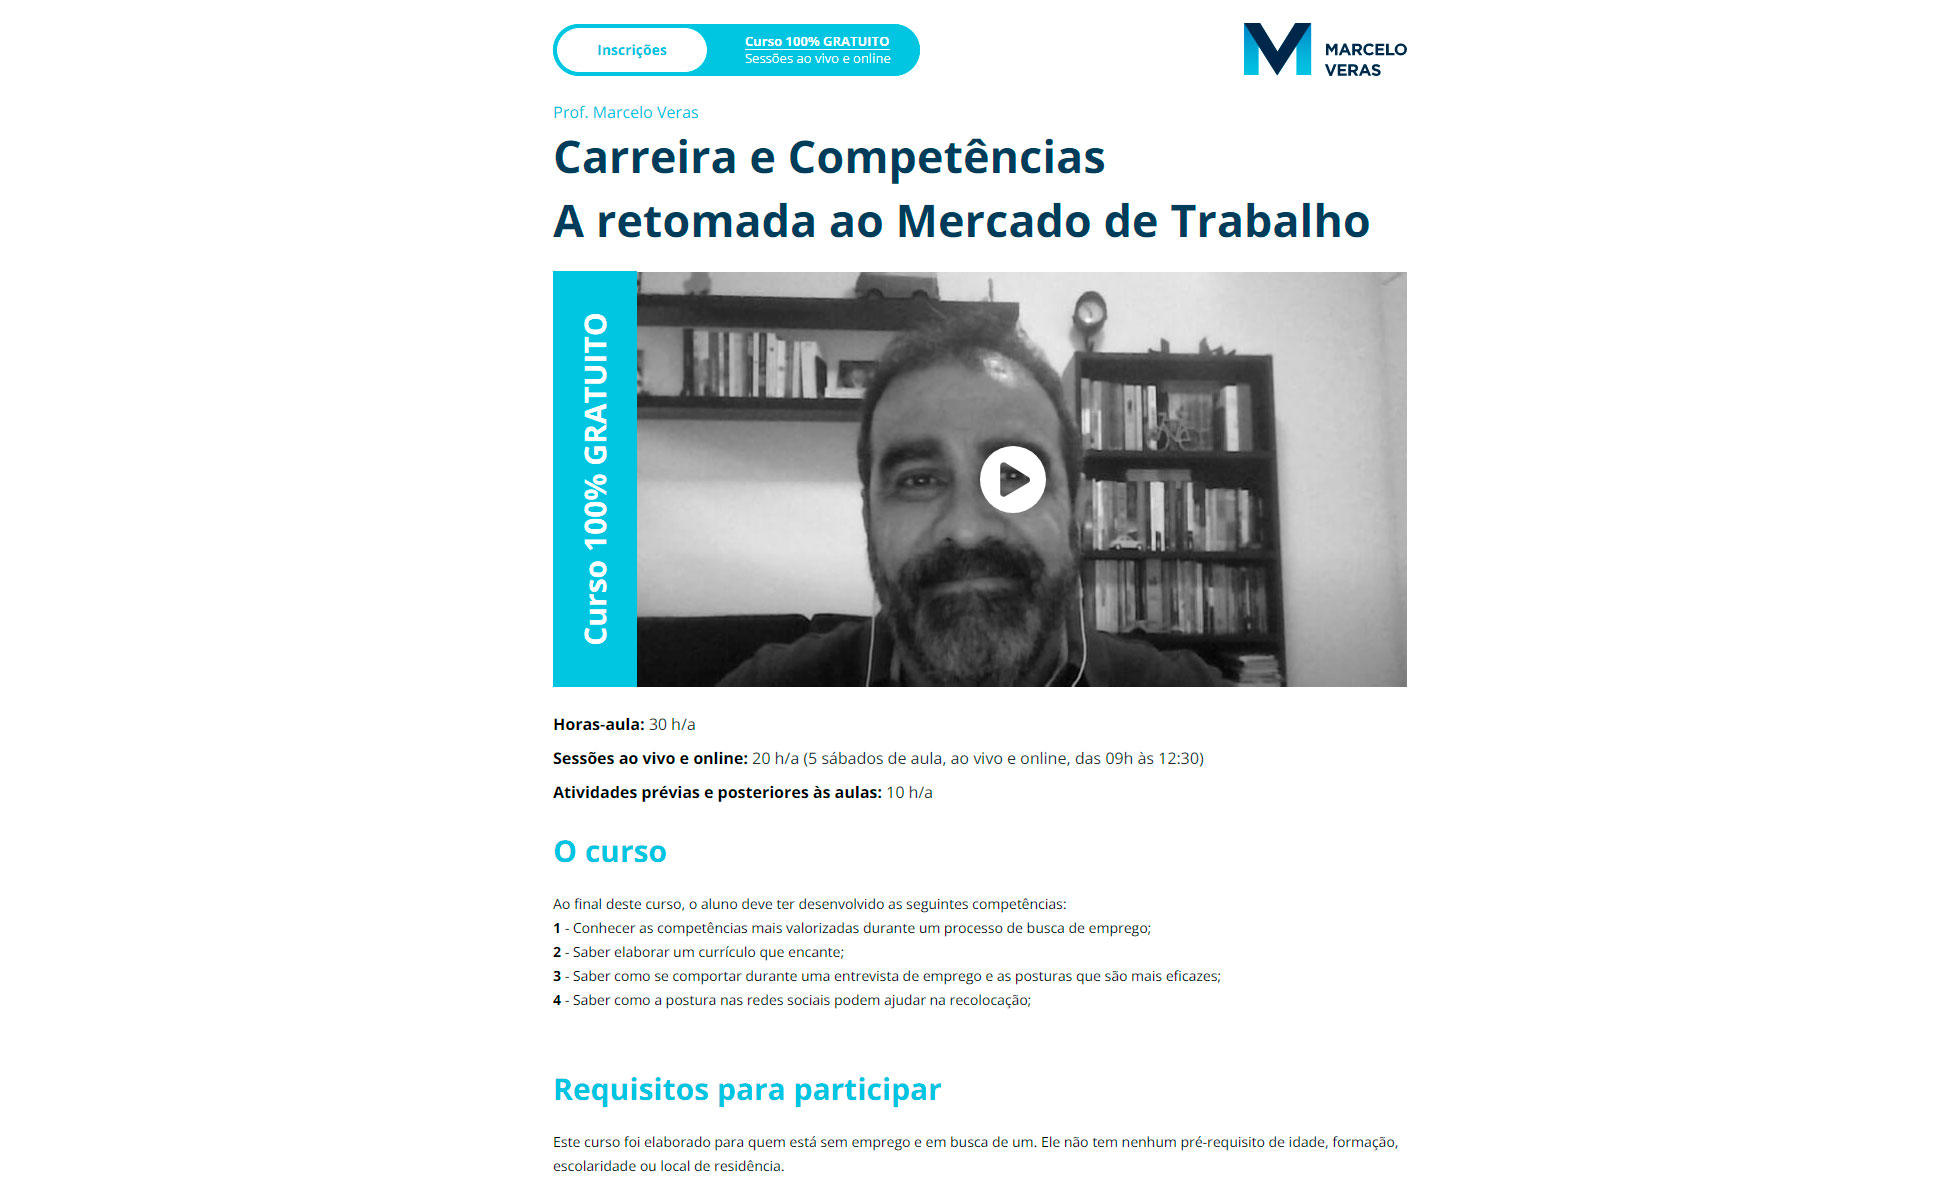 Marcelo Veras – Curso Gratuito – Carreira e Competências